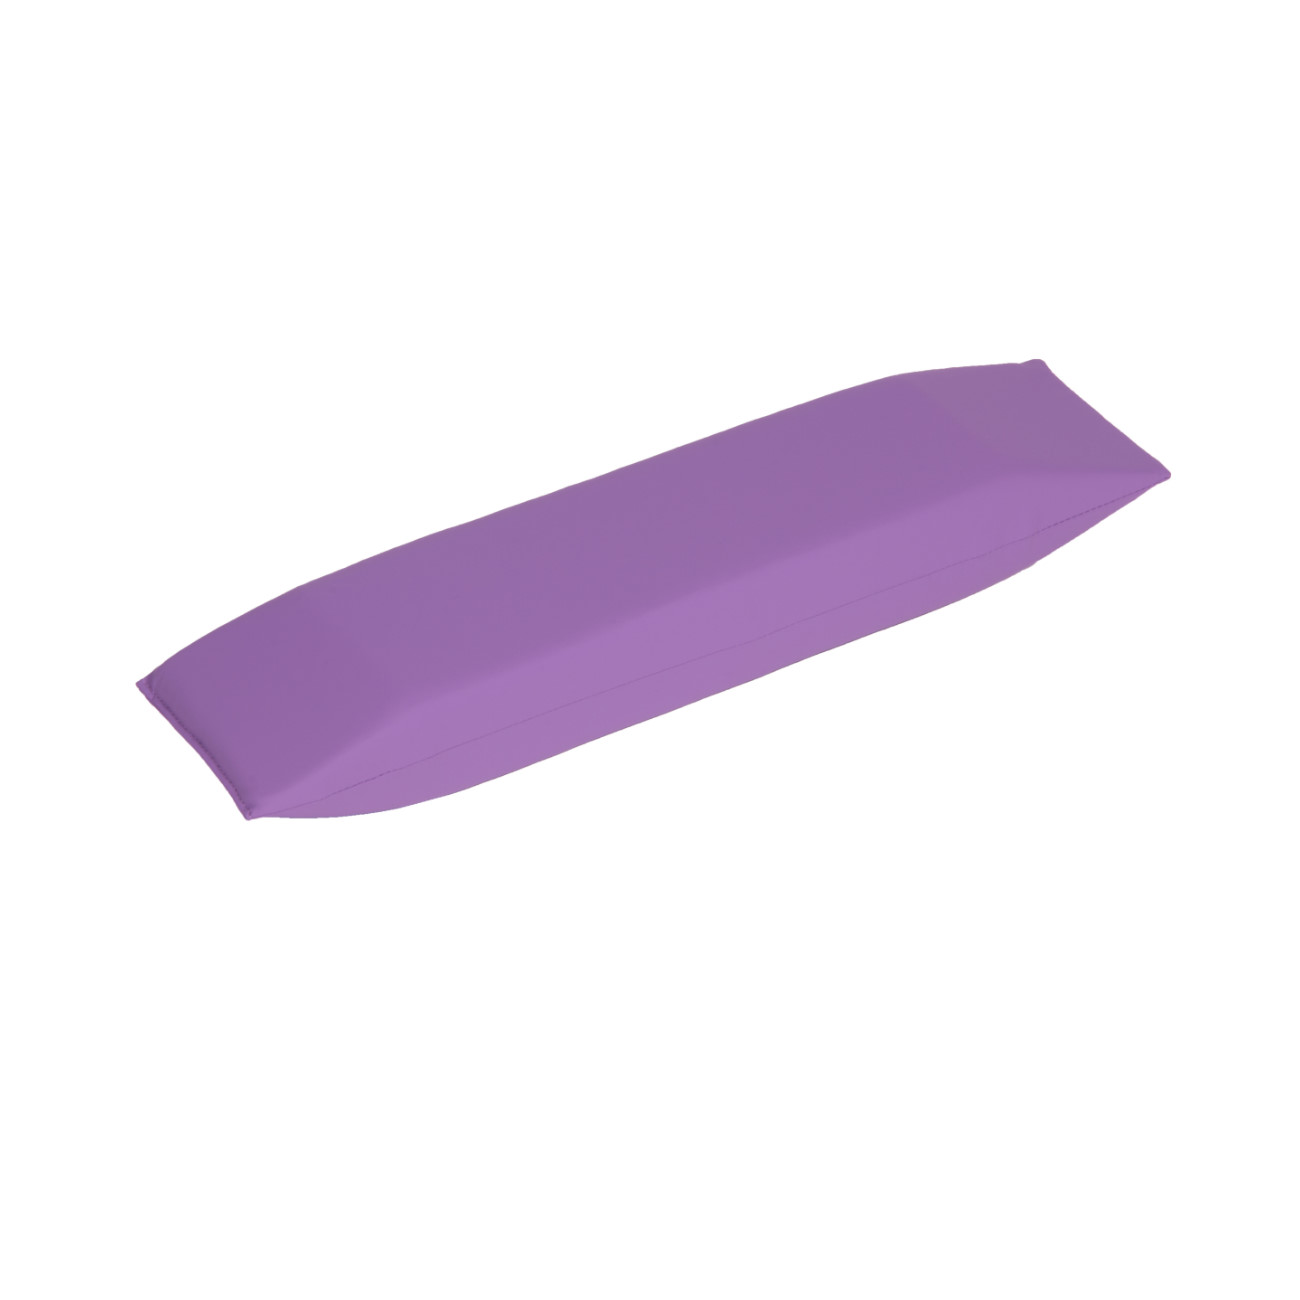 PurplePos Keilkissen XS | Lagerungskeil